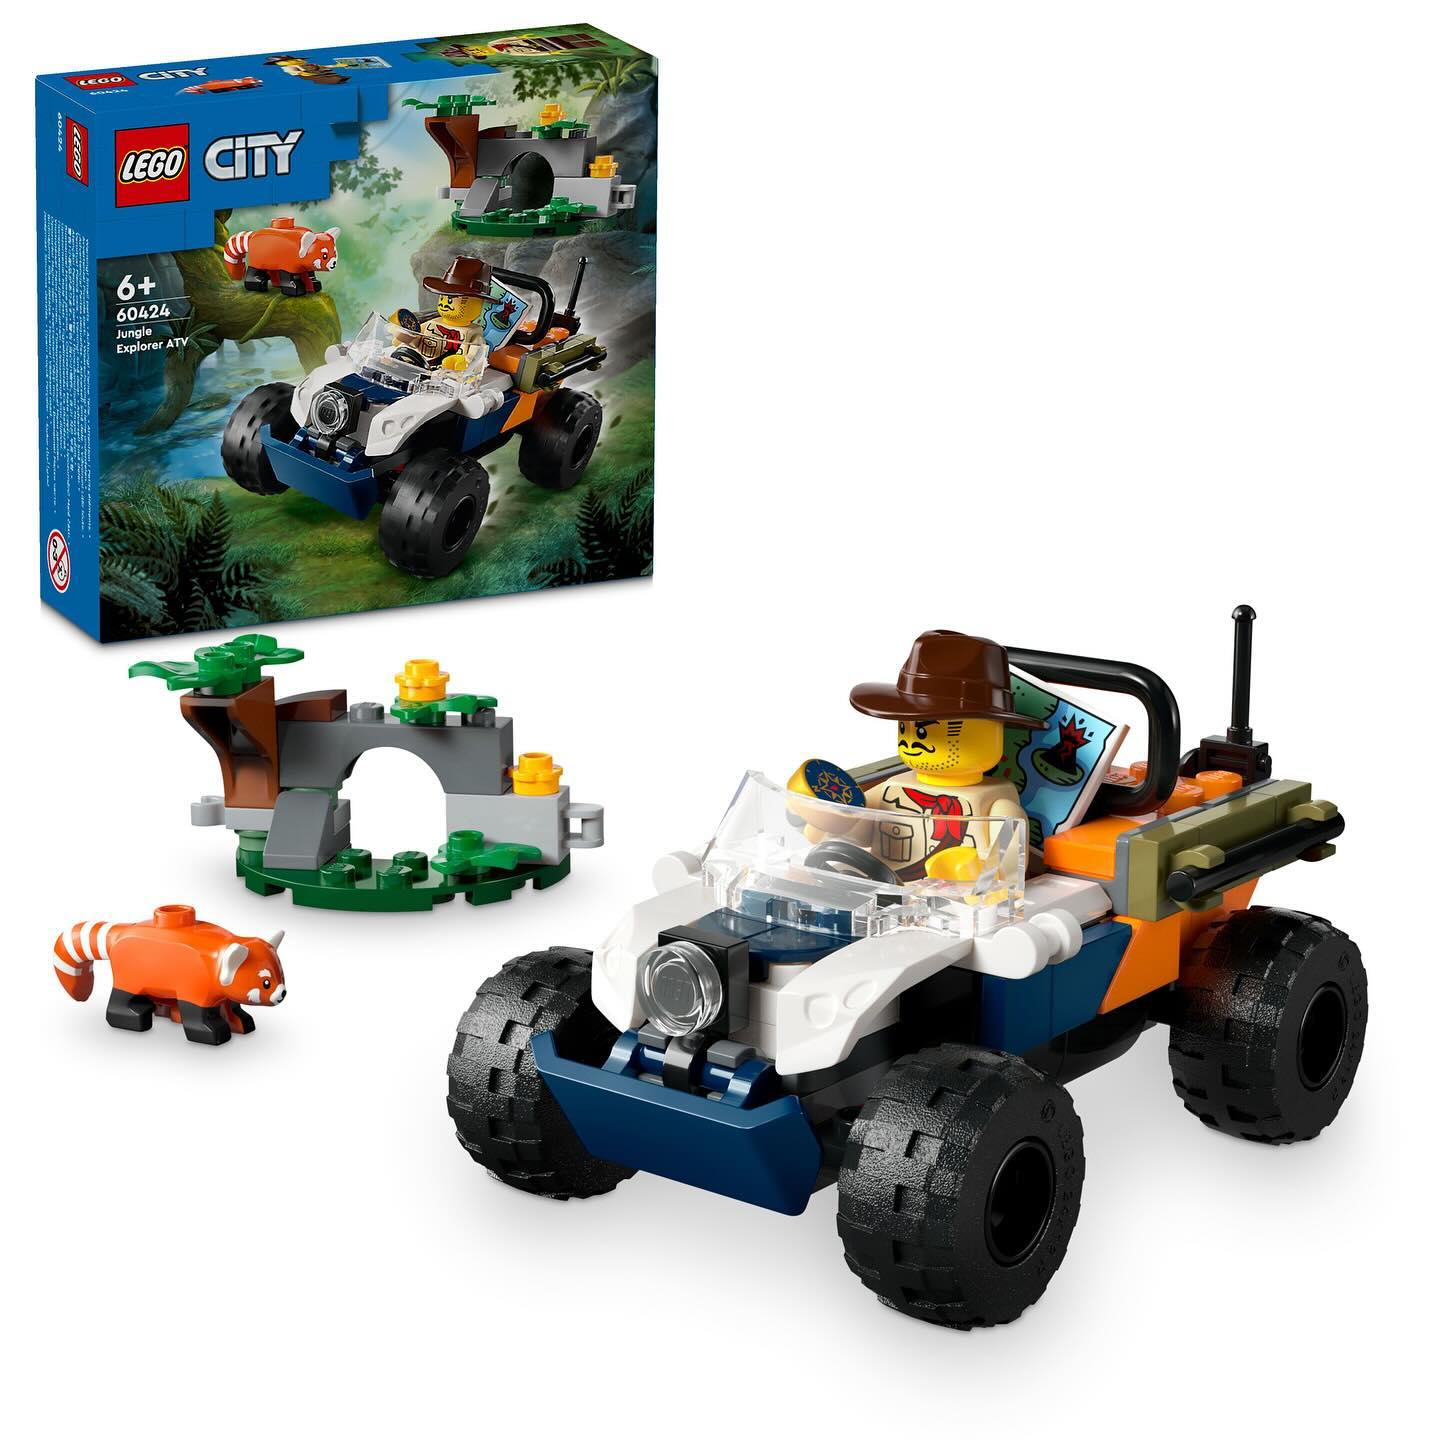 LEGO-City-Jungle-Explorer-ATV-60424.jpg